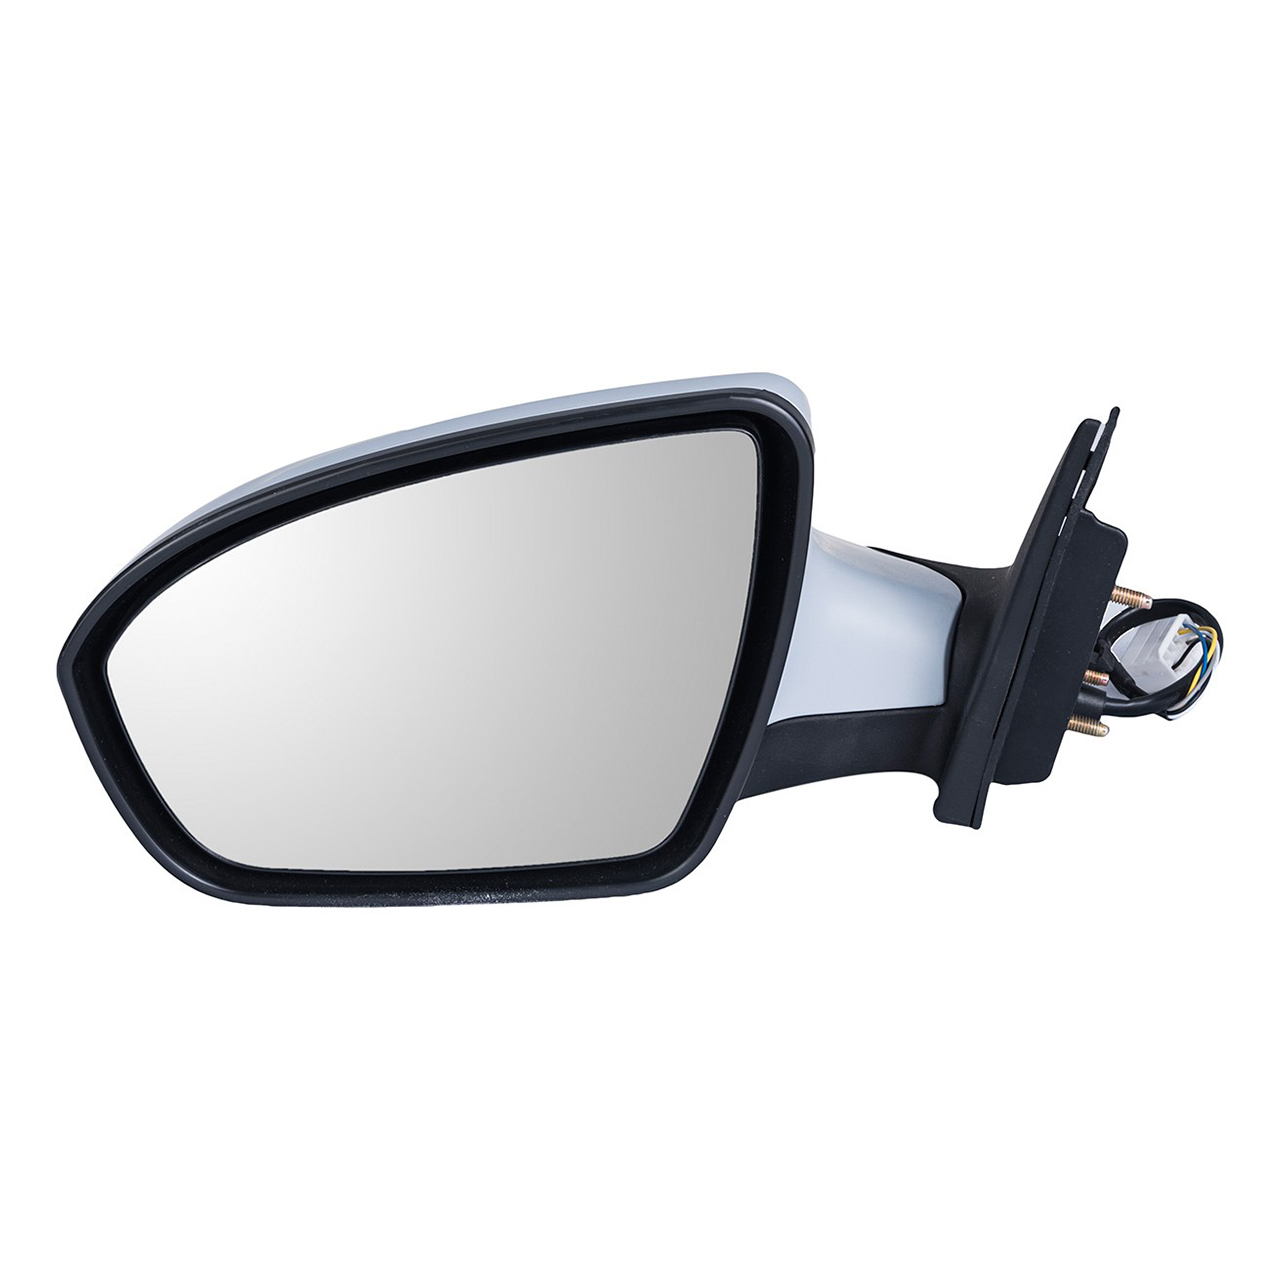 آینه بغل چپ مدل G8202100 مناسب برای خودروهای لیفان